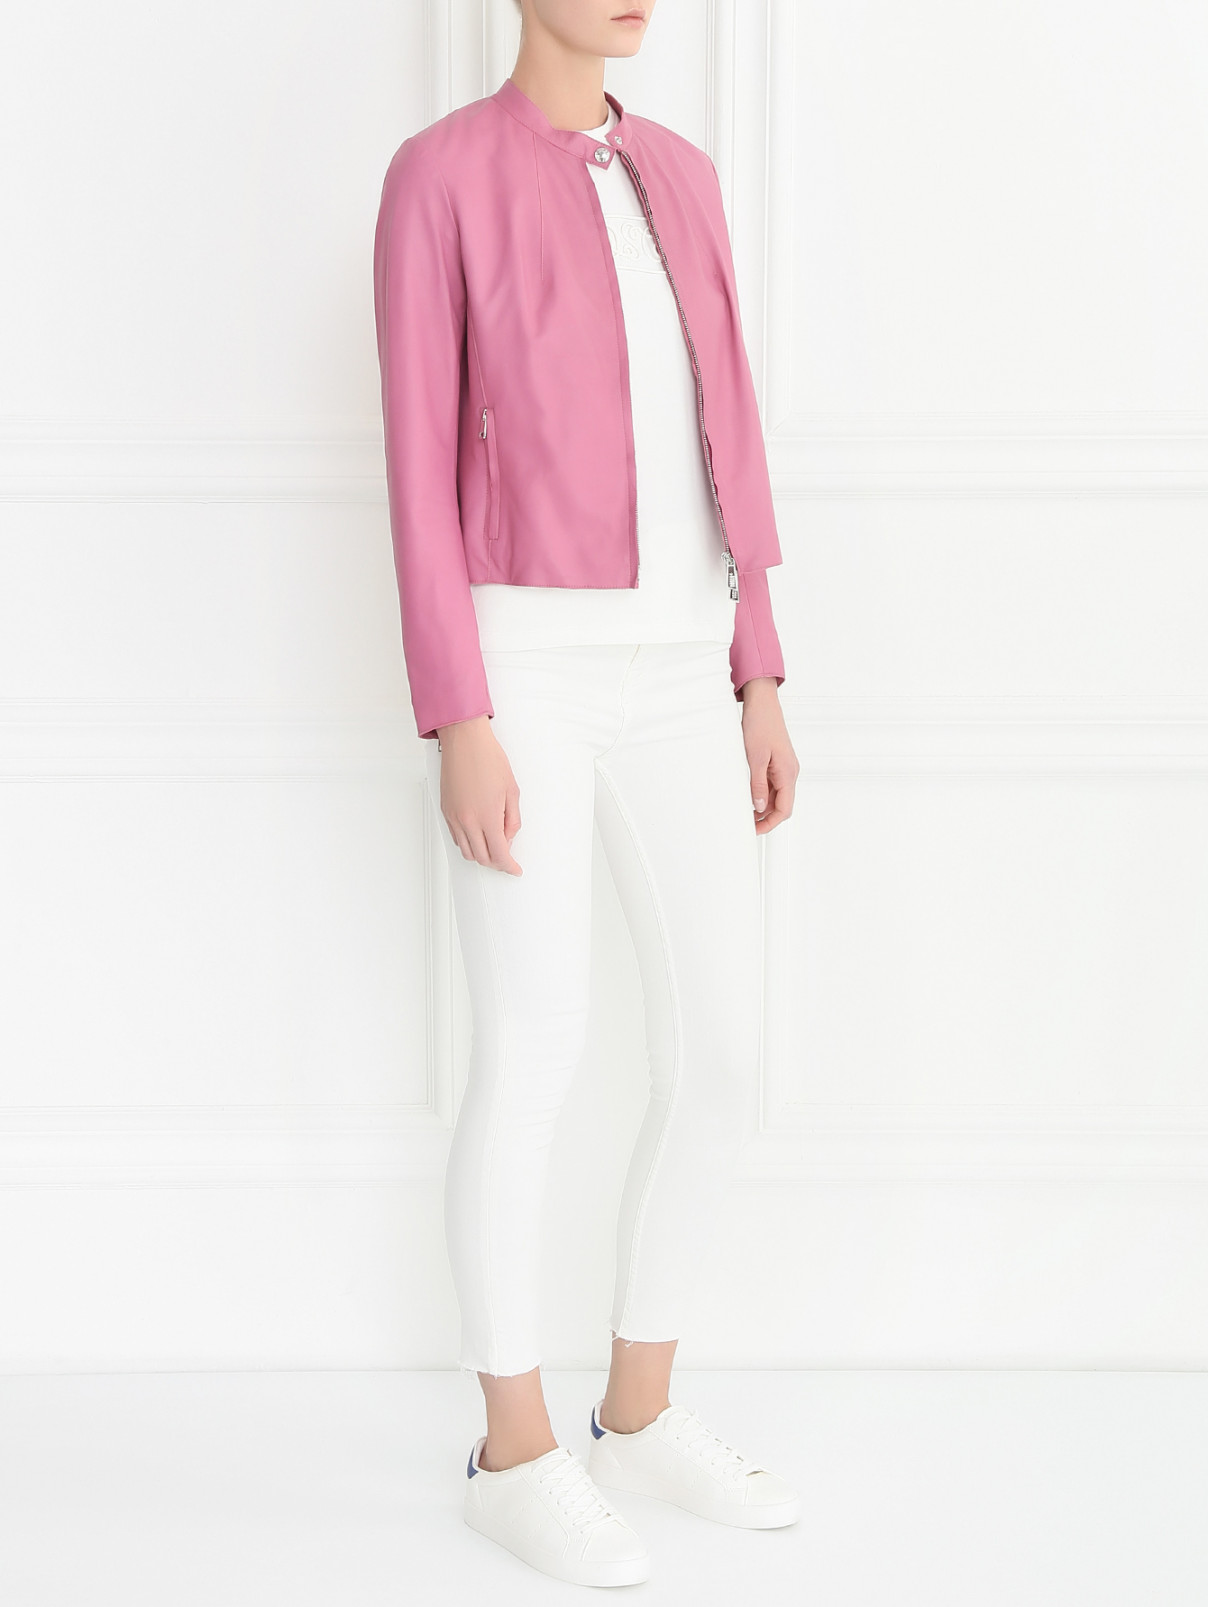 Куртка из кожи на молнии BOSCO  –  Модель Общий вид  – Цвет:  Розовый